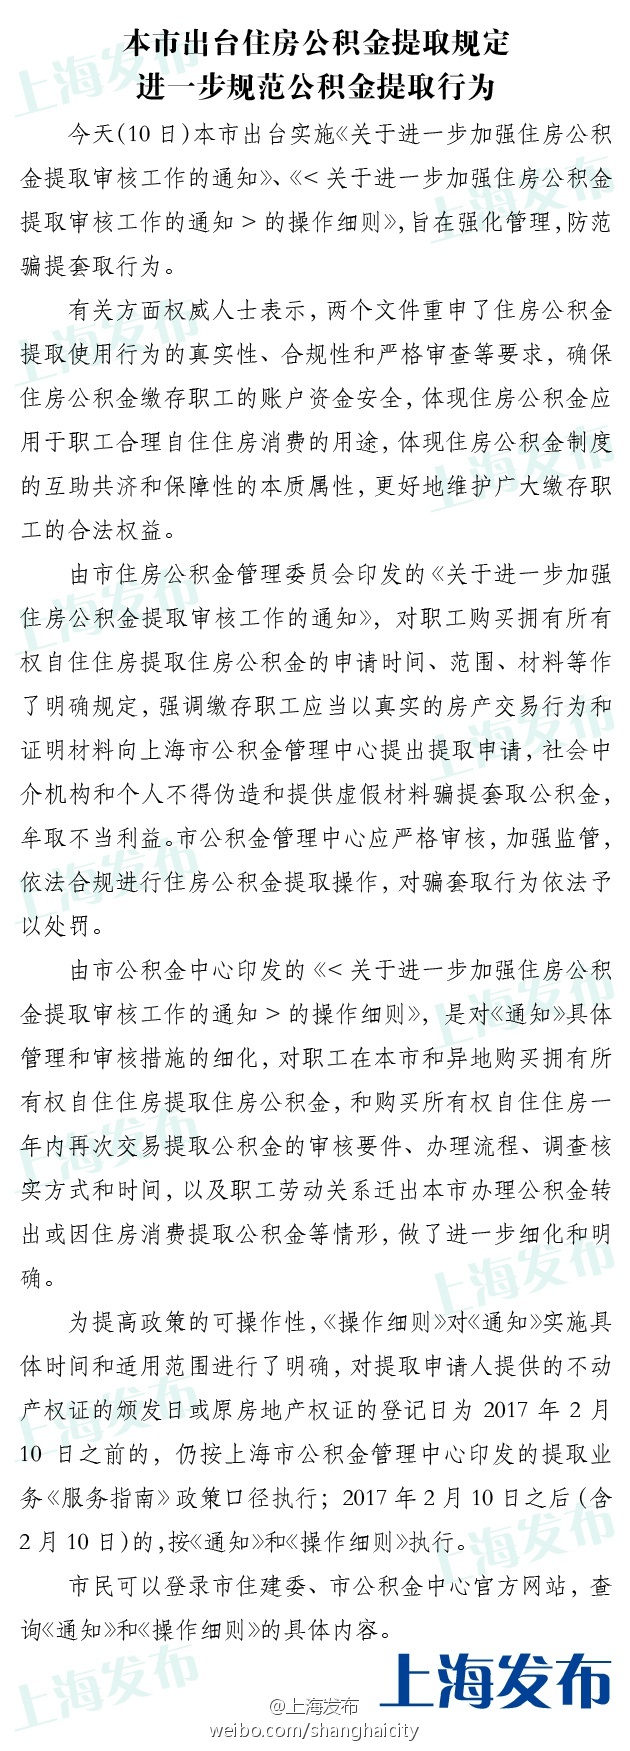 上海出台住房公积金提取审核新举措 2月10日起